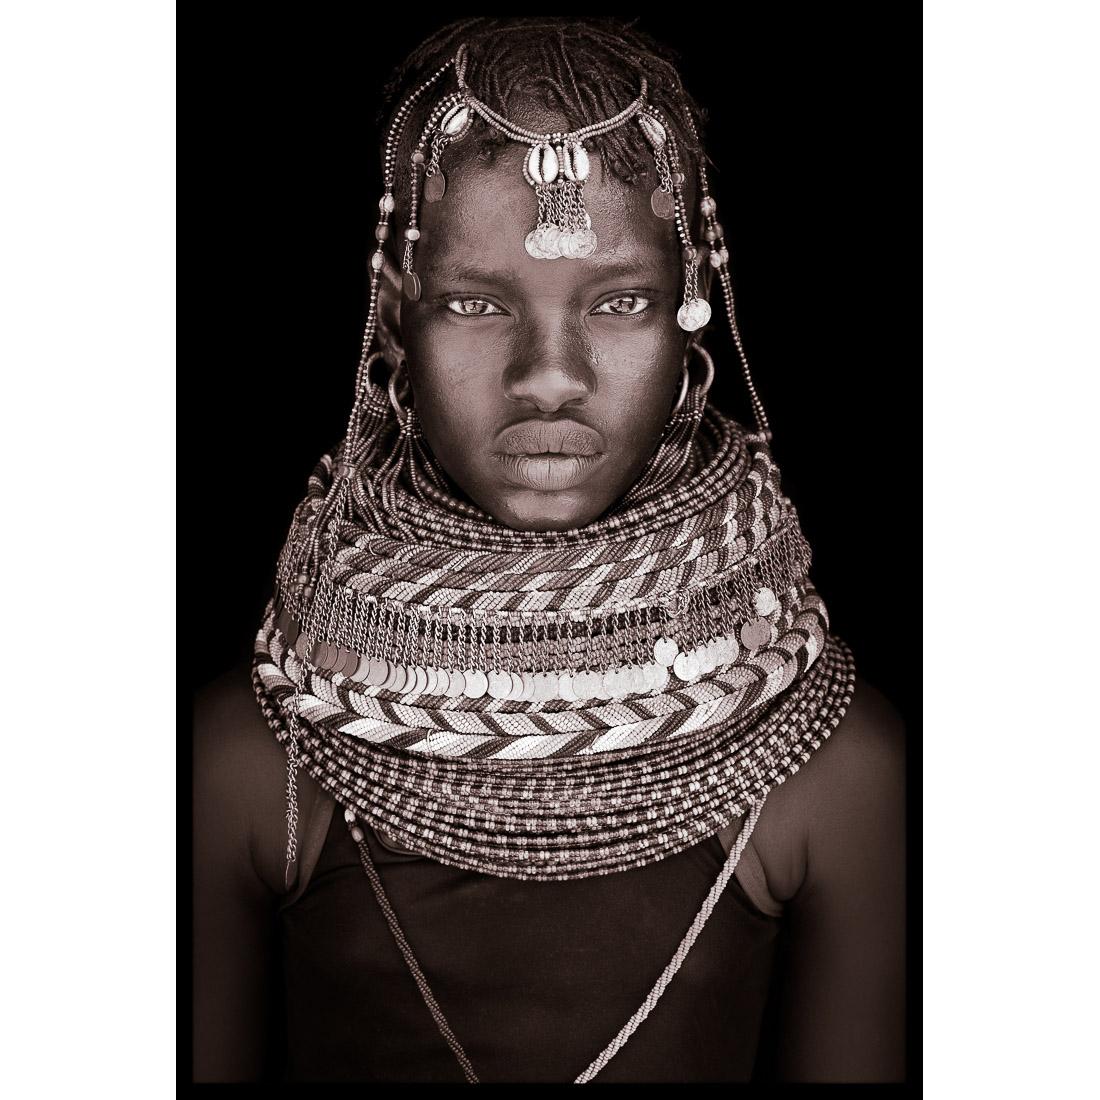 Un portrait de Nawoi, une femme turkana du nord du Kenya, en 2019.

Le travail de John Kenny est entièrement tourné sur place, dans certains des coins les plus reculés d'Afrique. Ses images sont toutes prises avec une lumière naturelle et ses sujets